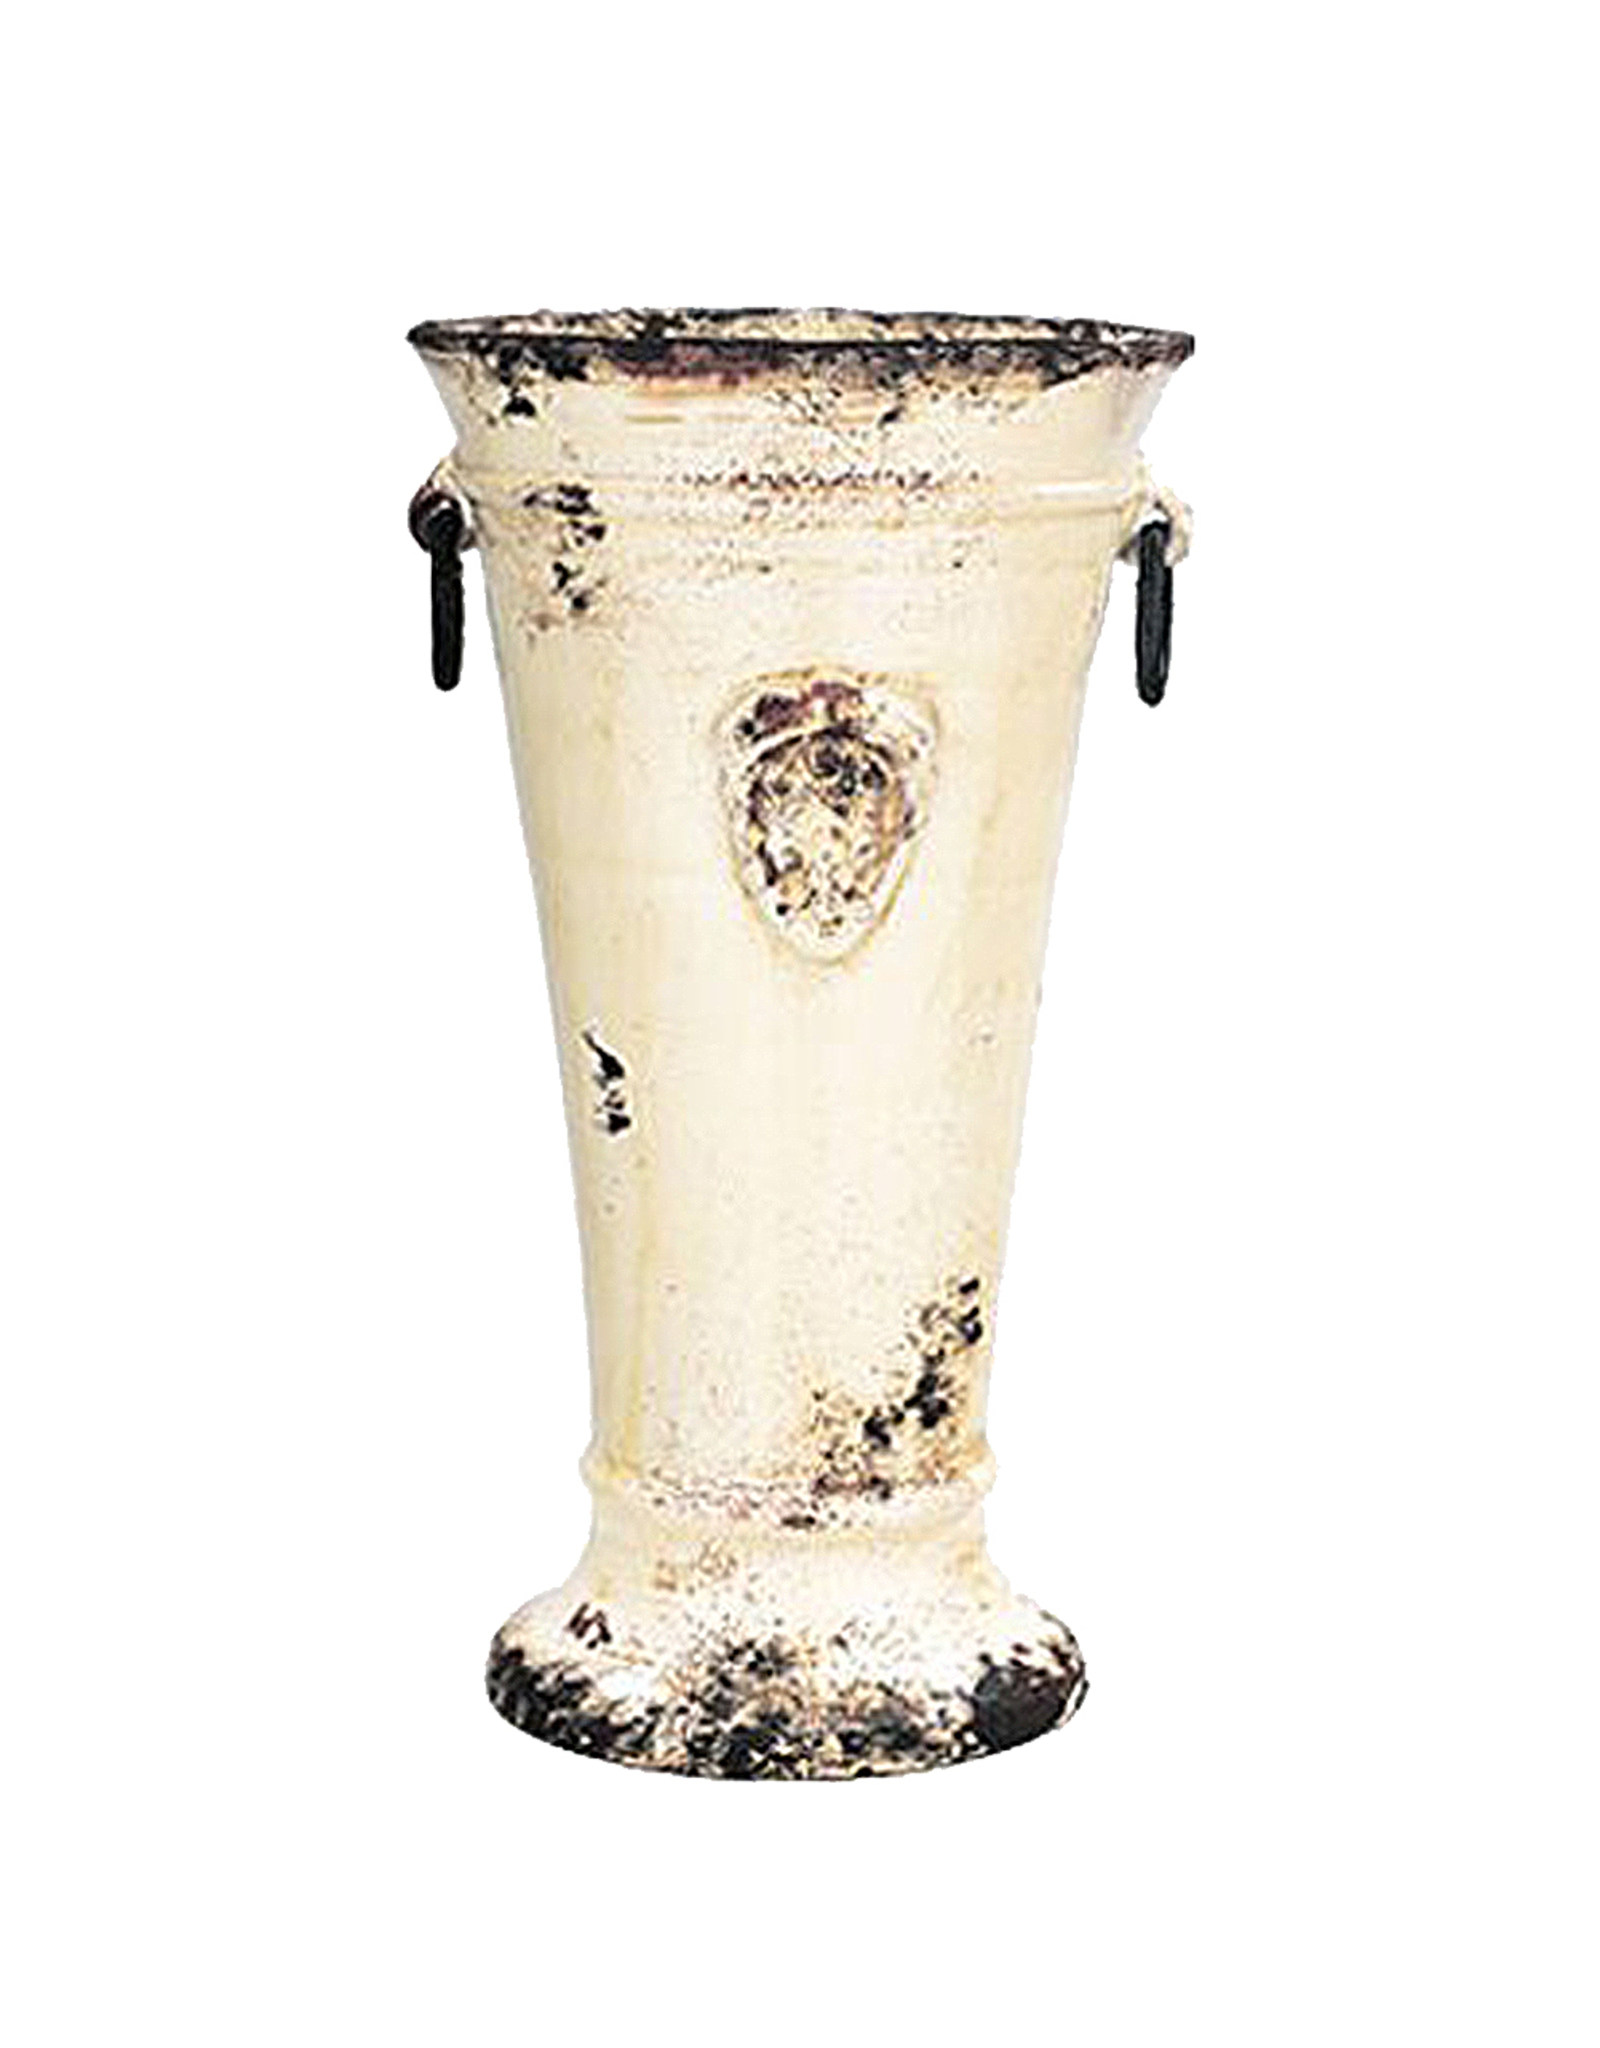 Italian Ceramic Cream Handled Tulip Vase